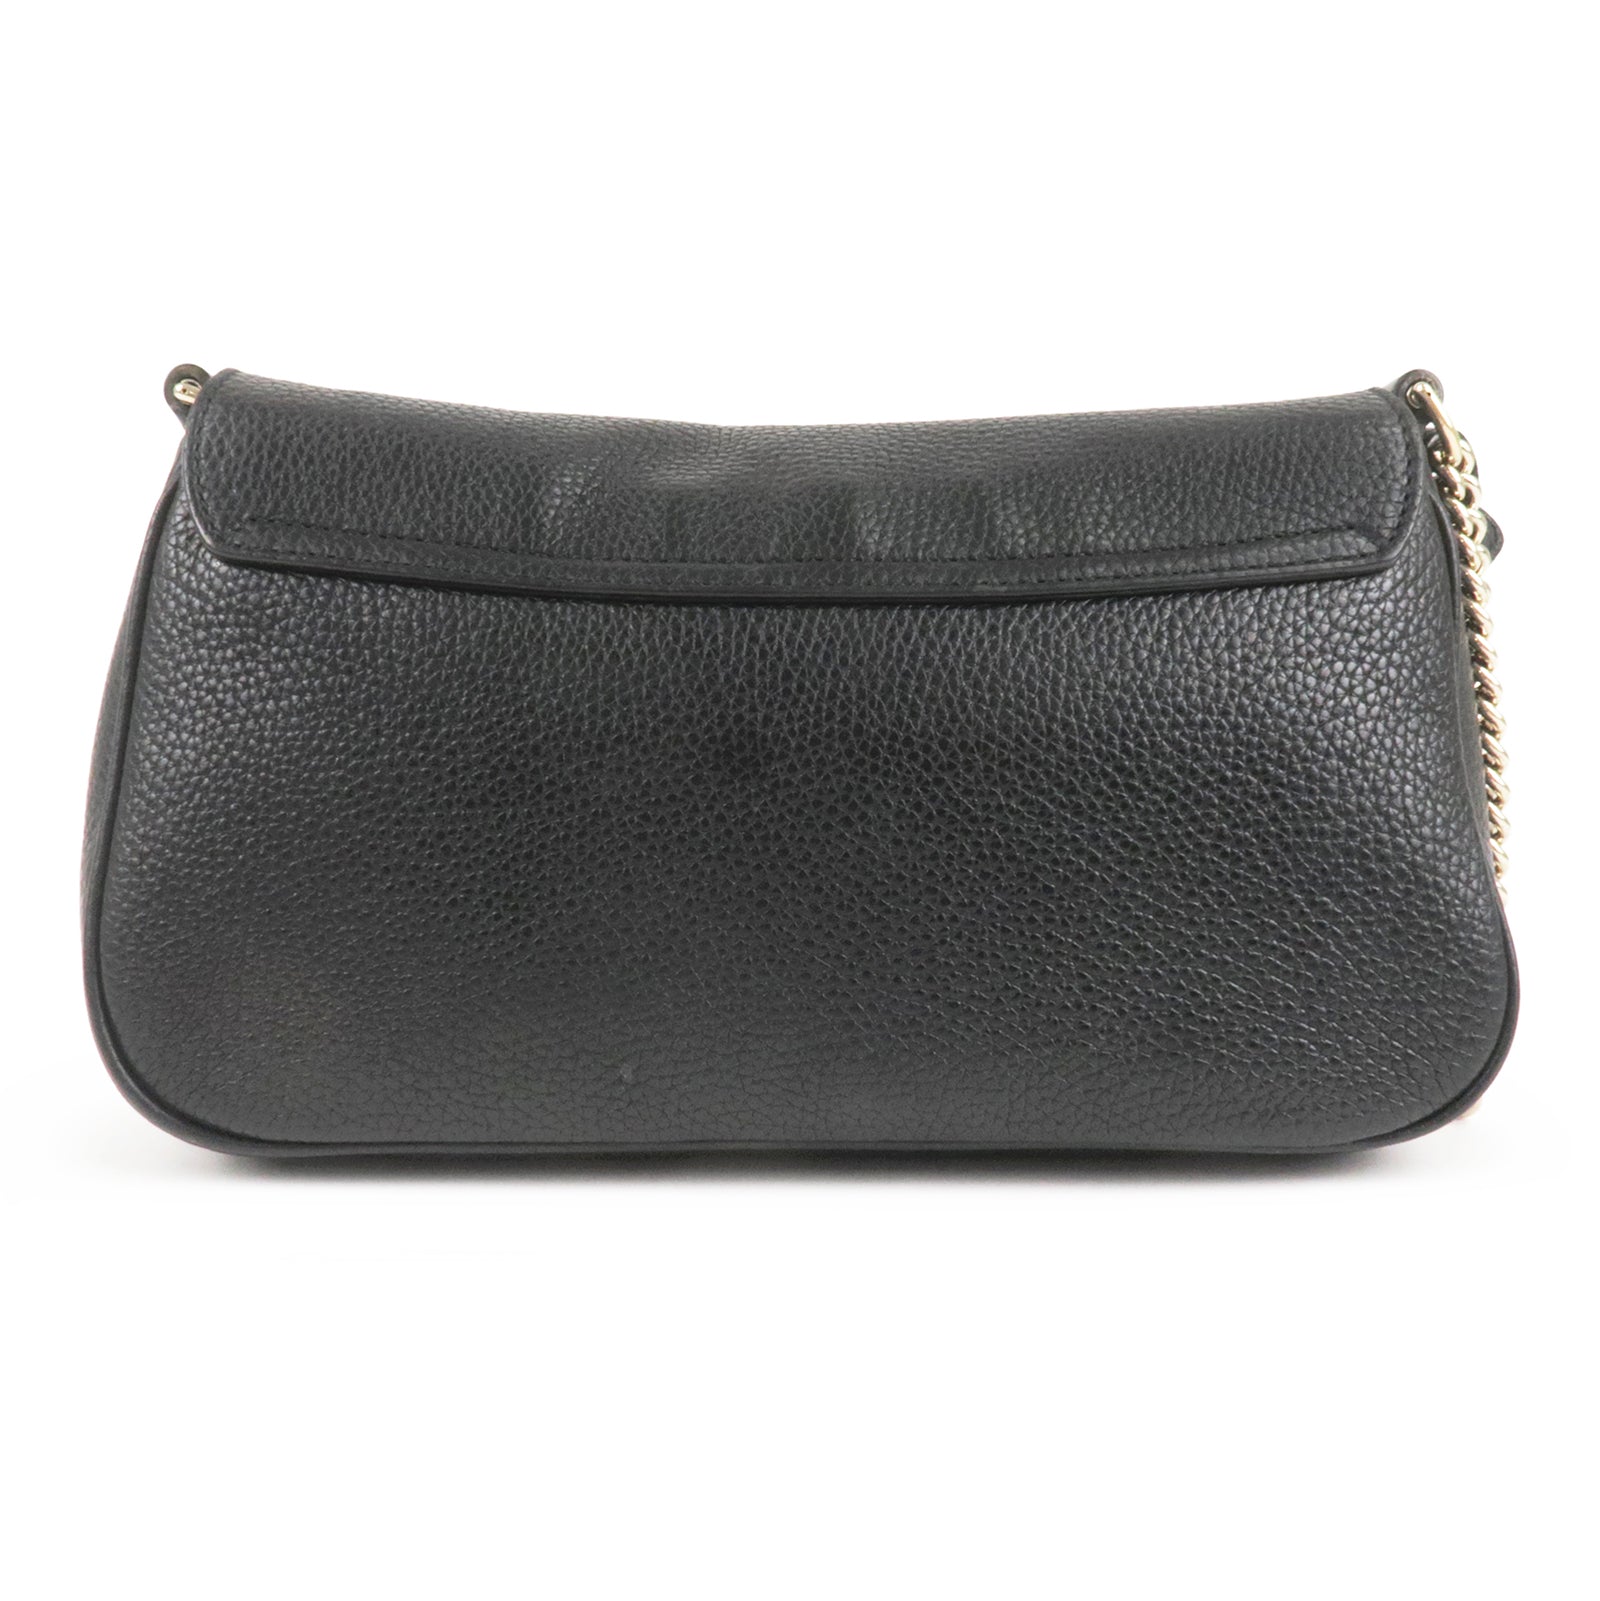 Vintage Gucci top handle (please help to ID!) : r/handbags